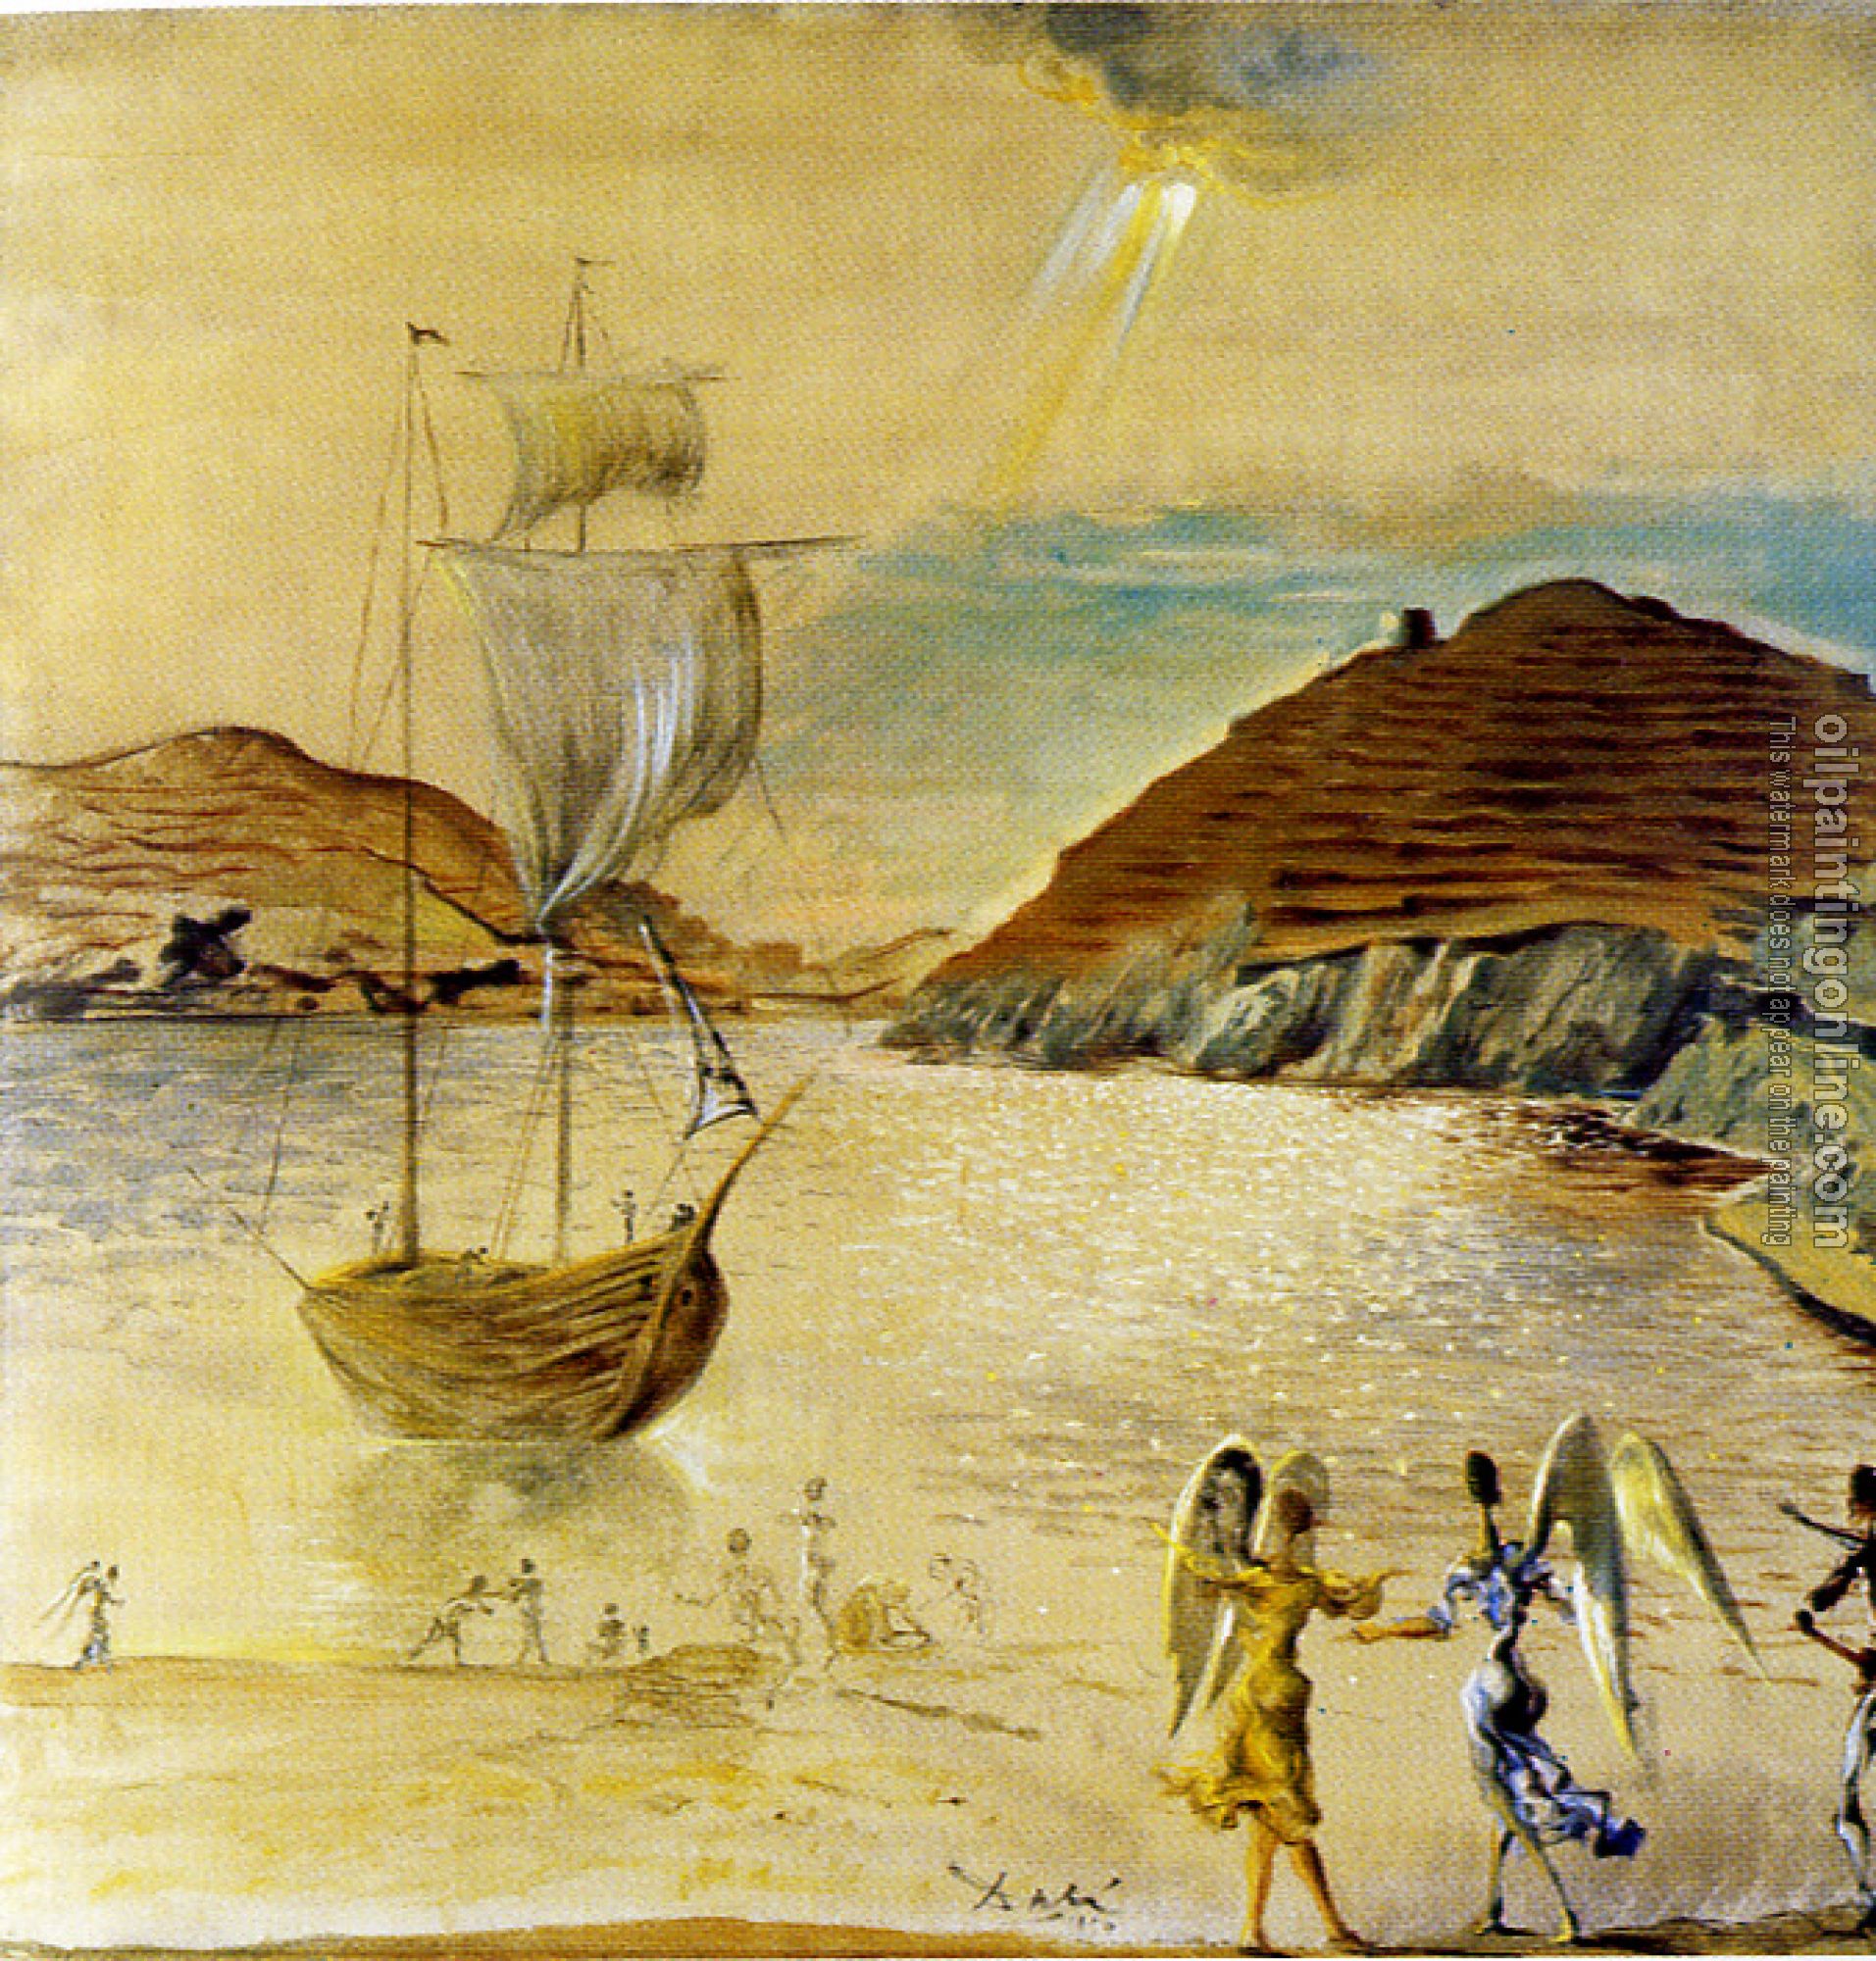 Dali, Salvador - Landscape of Port Lligat with Homely Angels and Fishermen